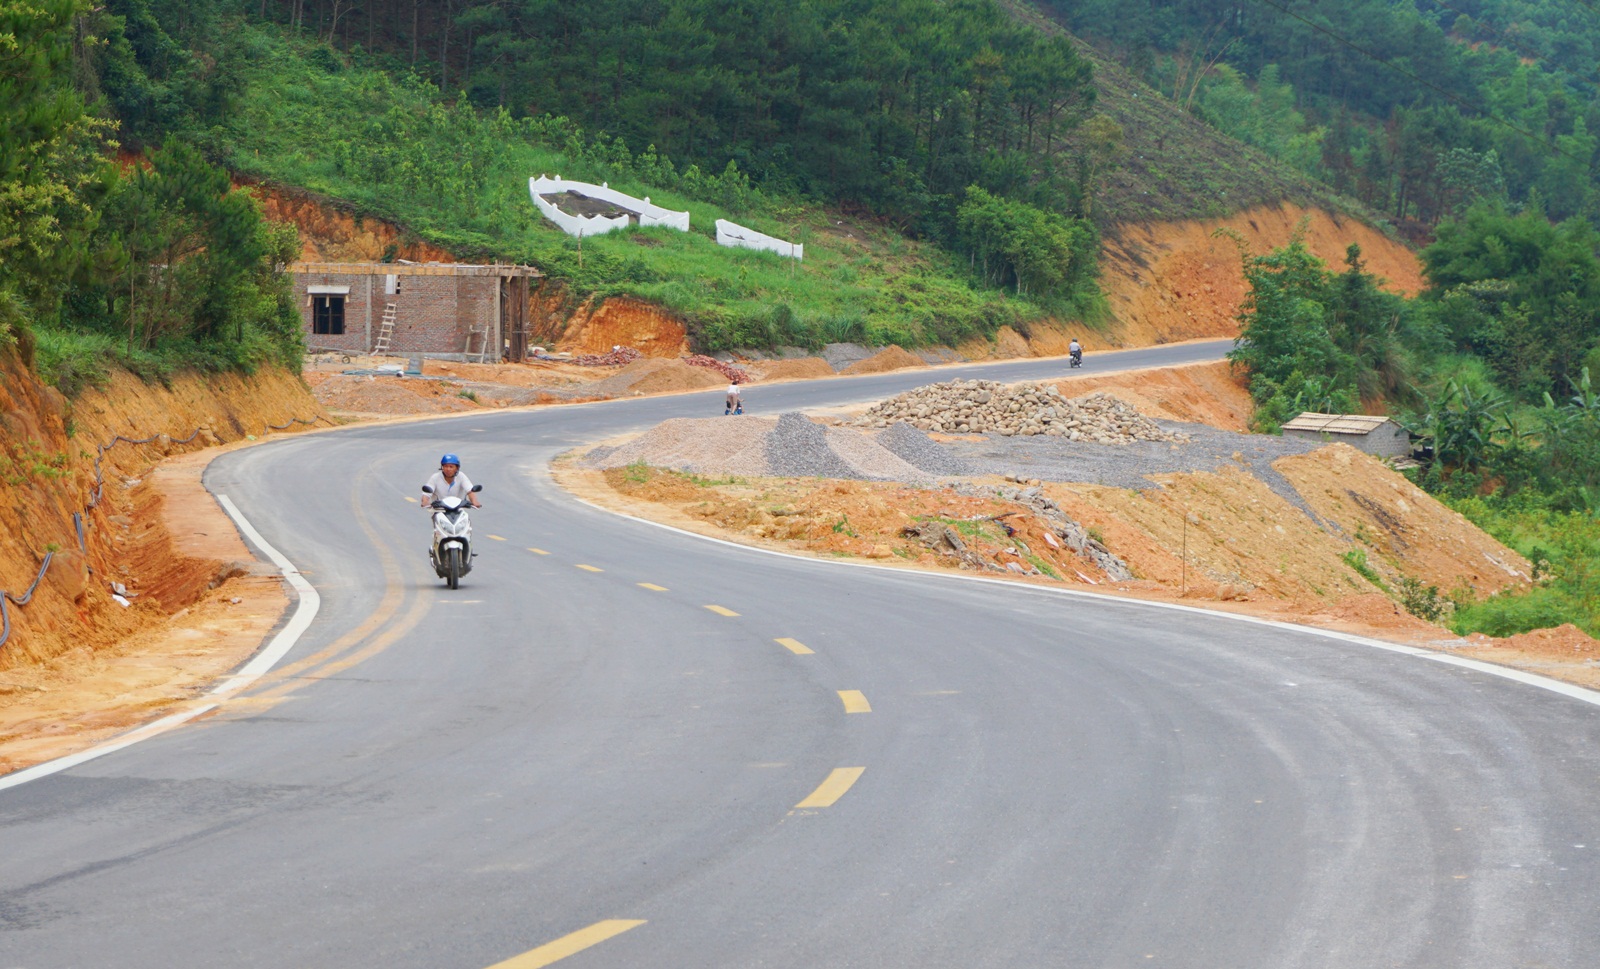 Hạ tầng giao thông của huyện Bình Liêu từng bước được hoàn thiện, đáp ứng yêu cầu phát triển du lịch. (ảnh: tuyến đường thị trấn Bình Liêu - Húc Động hoàn thành trong tháng 4/2020)